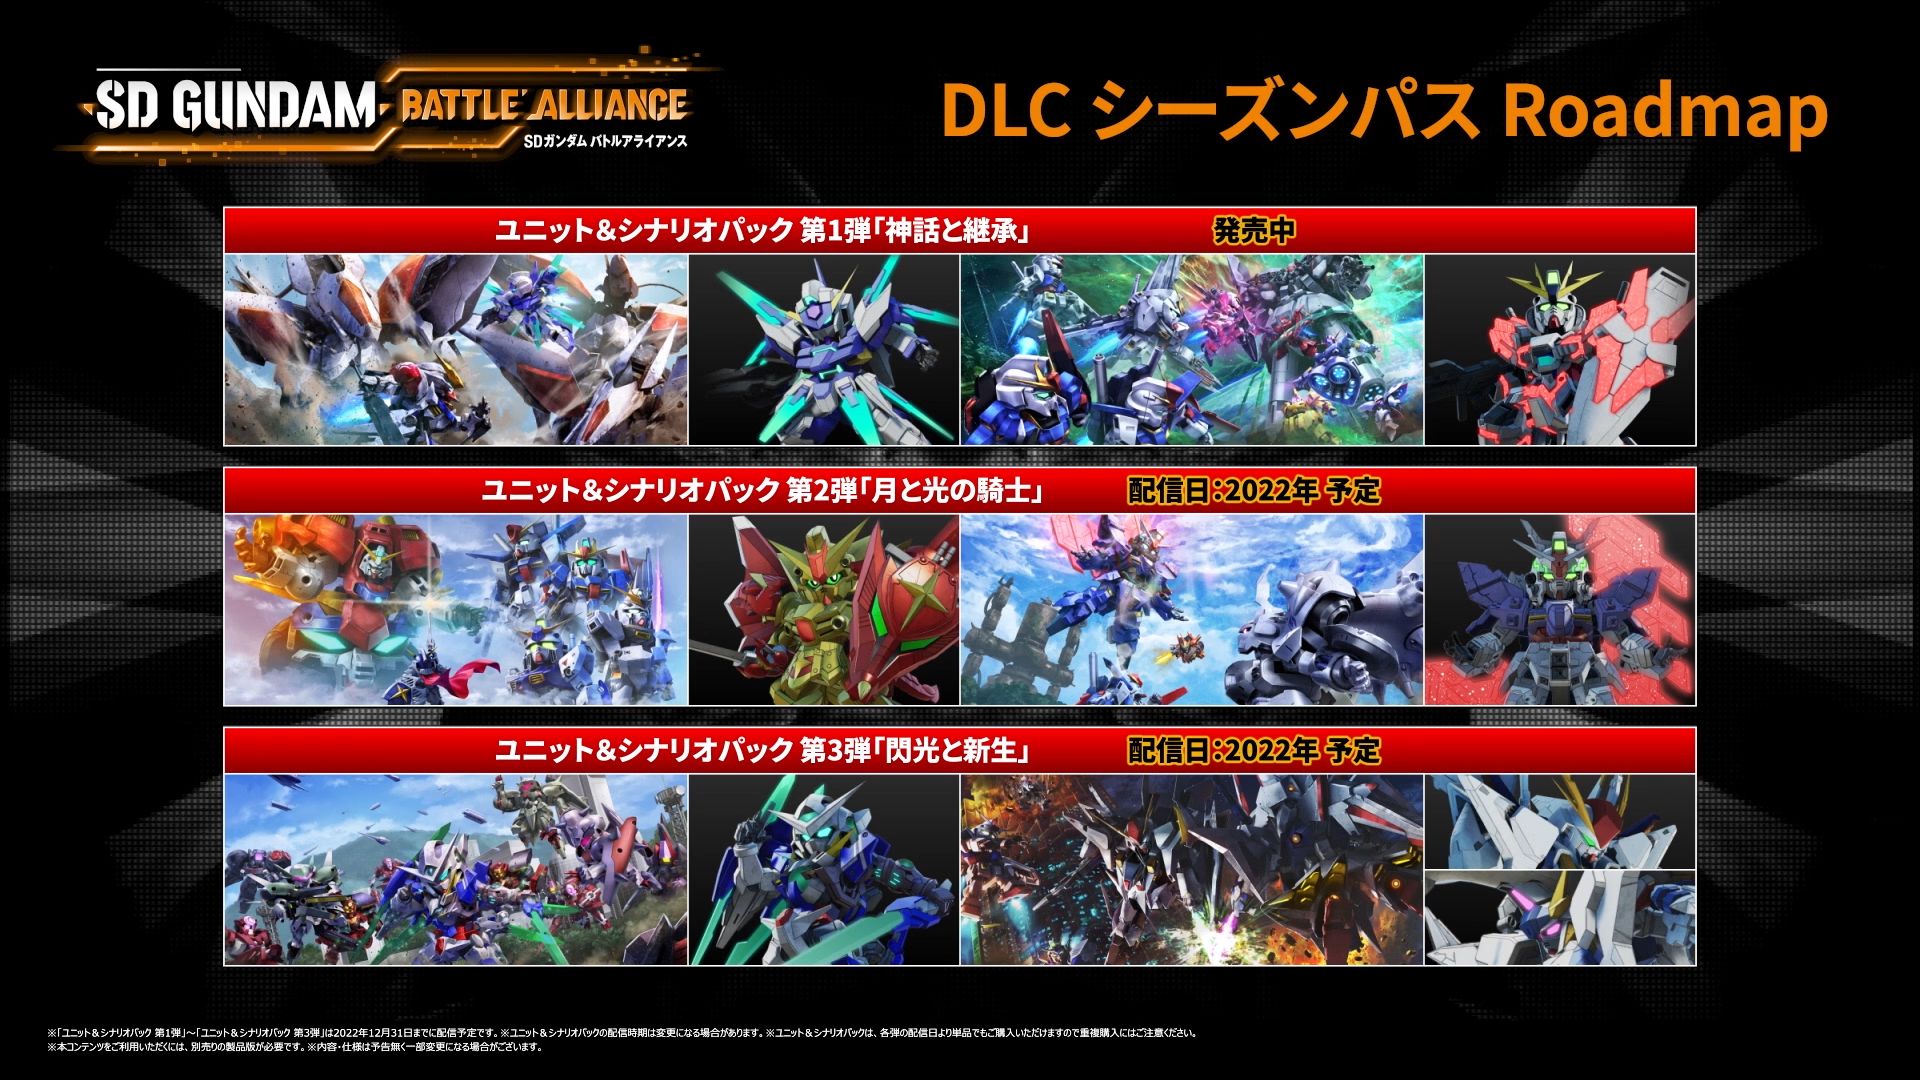 SDガンダム バトルアライアンス」，DLC第2弾を9月29日にリリース